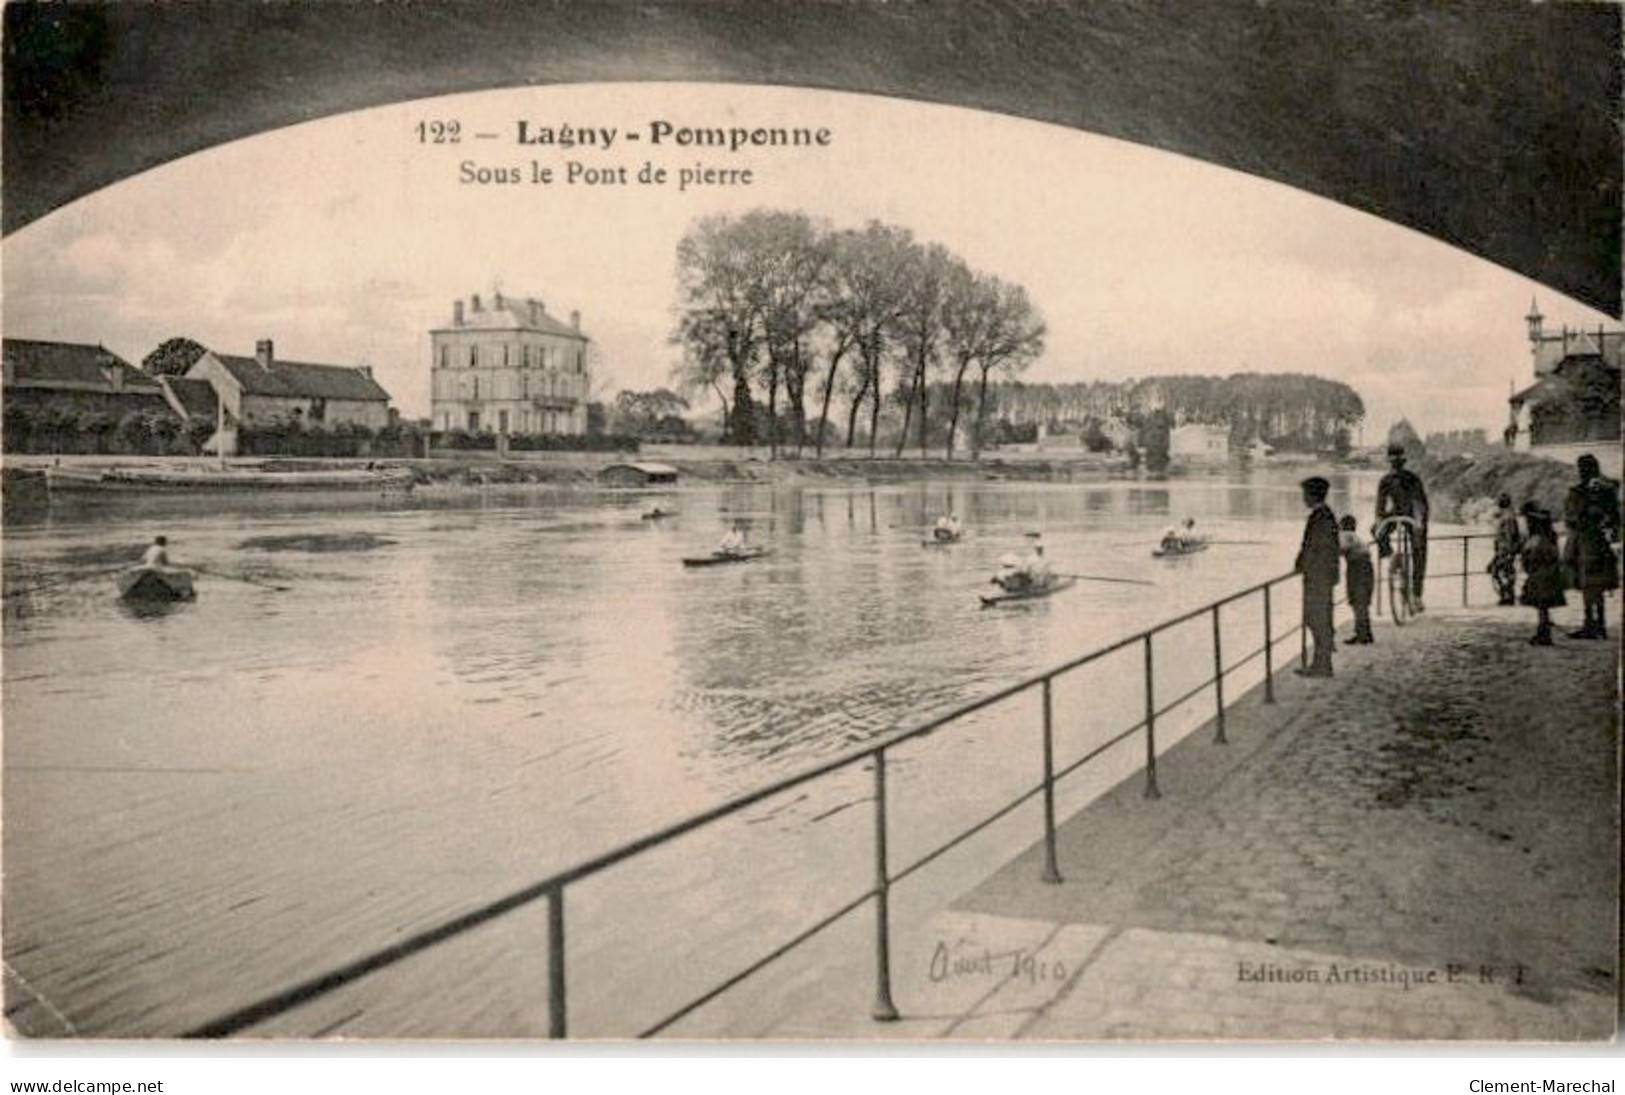 LAGNY: Pomponne Sous Le Pont De Pierre - état - Lagny Sur Marne